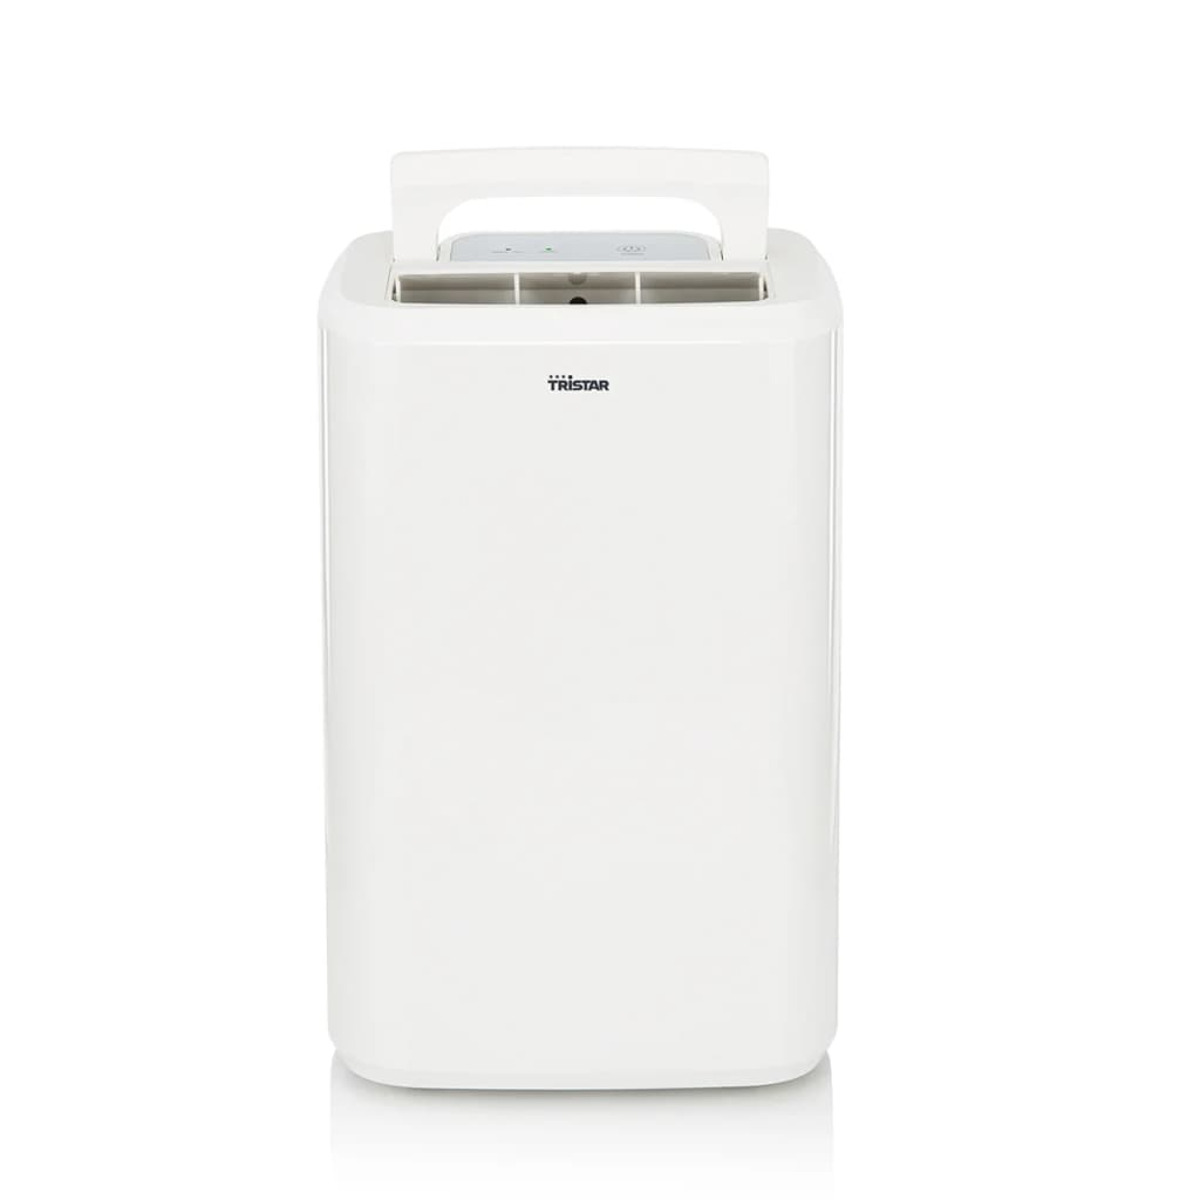 m²) TRISTAR Luftentfeuchter Weiß, Raumgröße: 410502 20